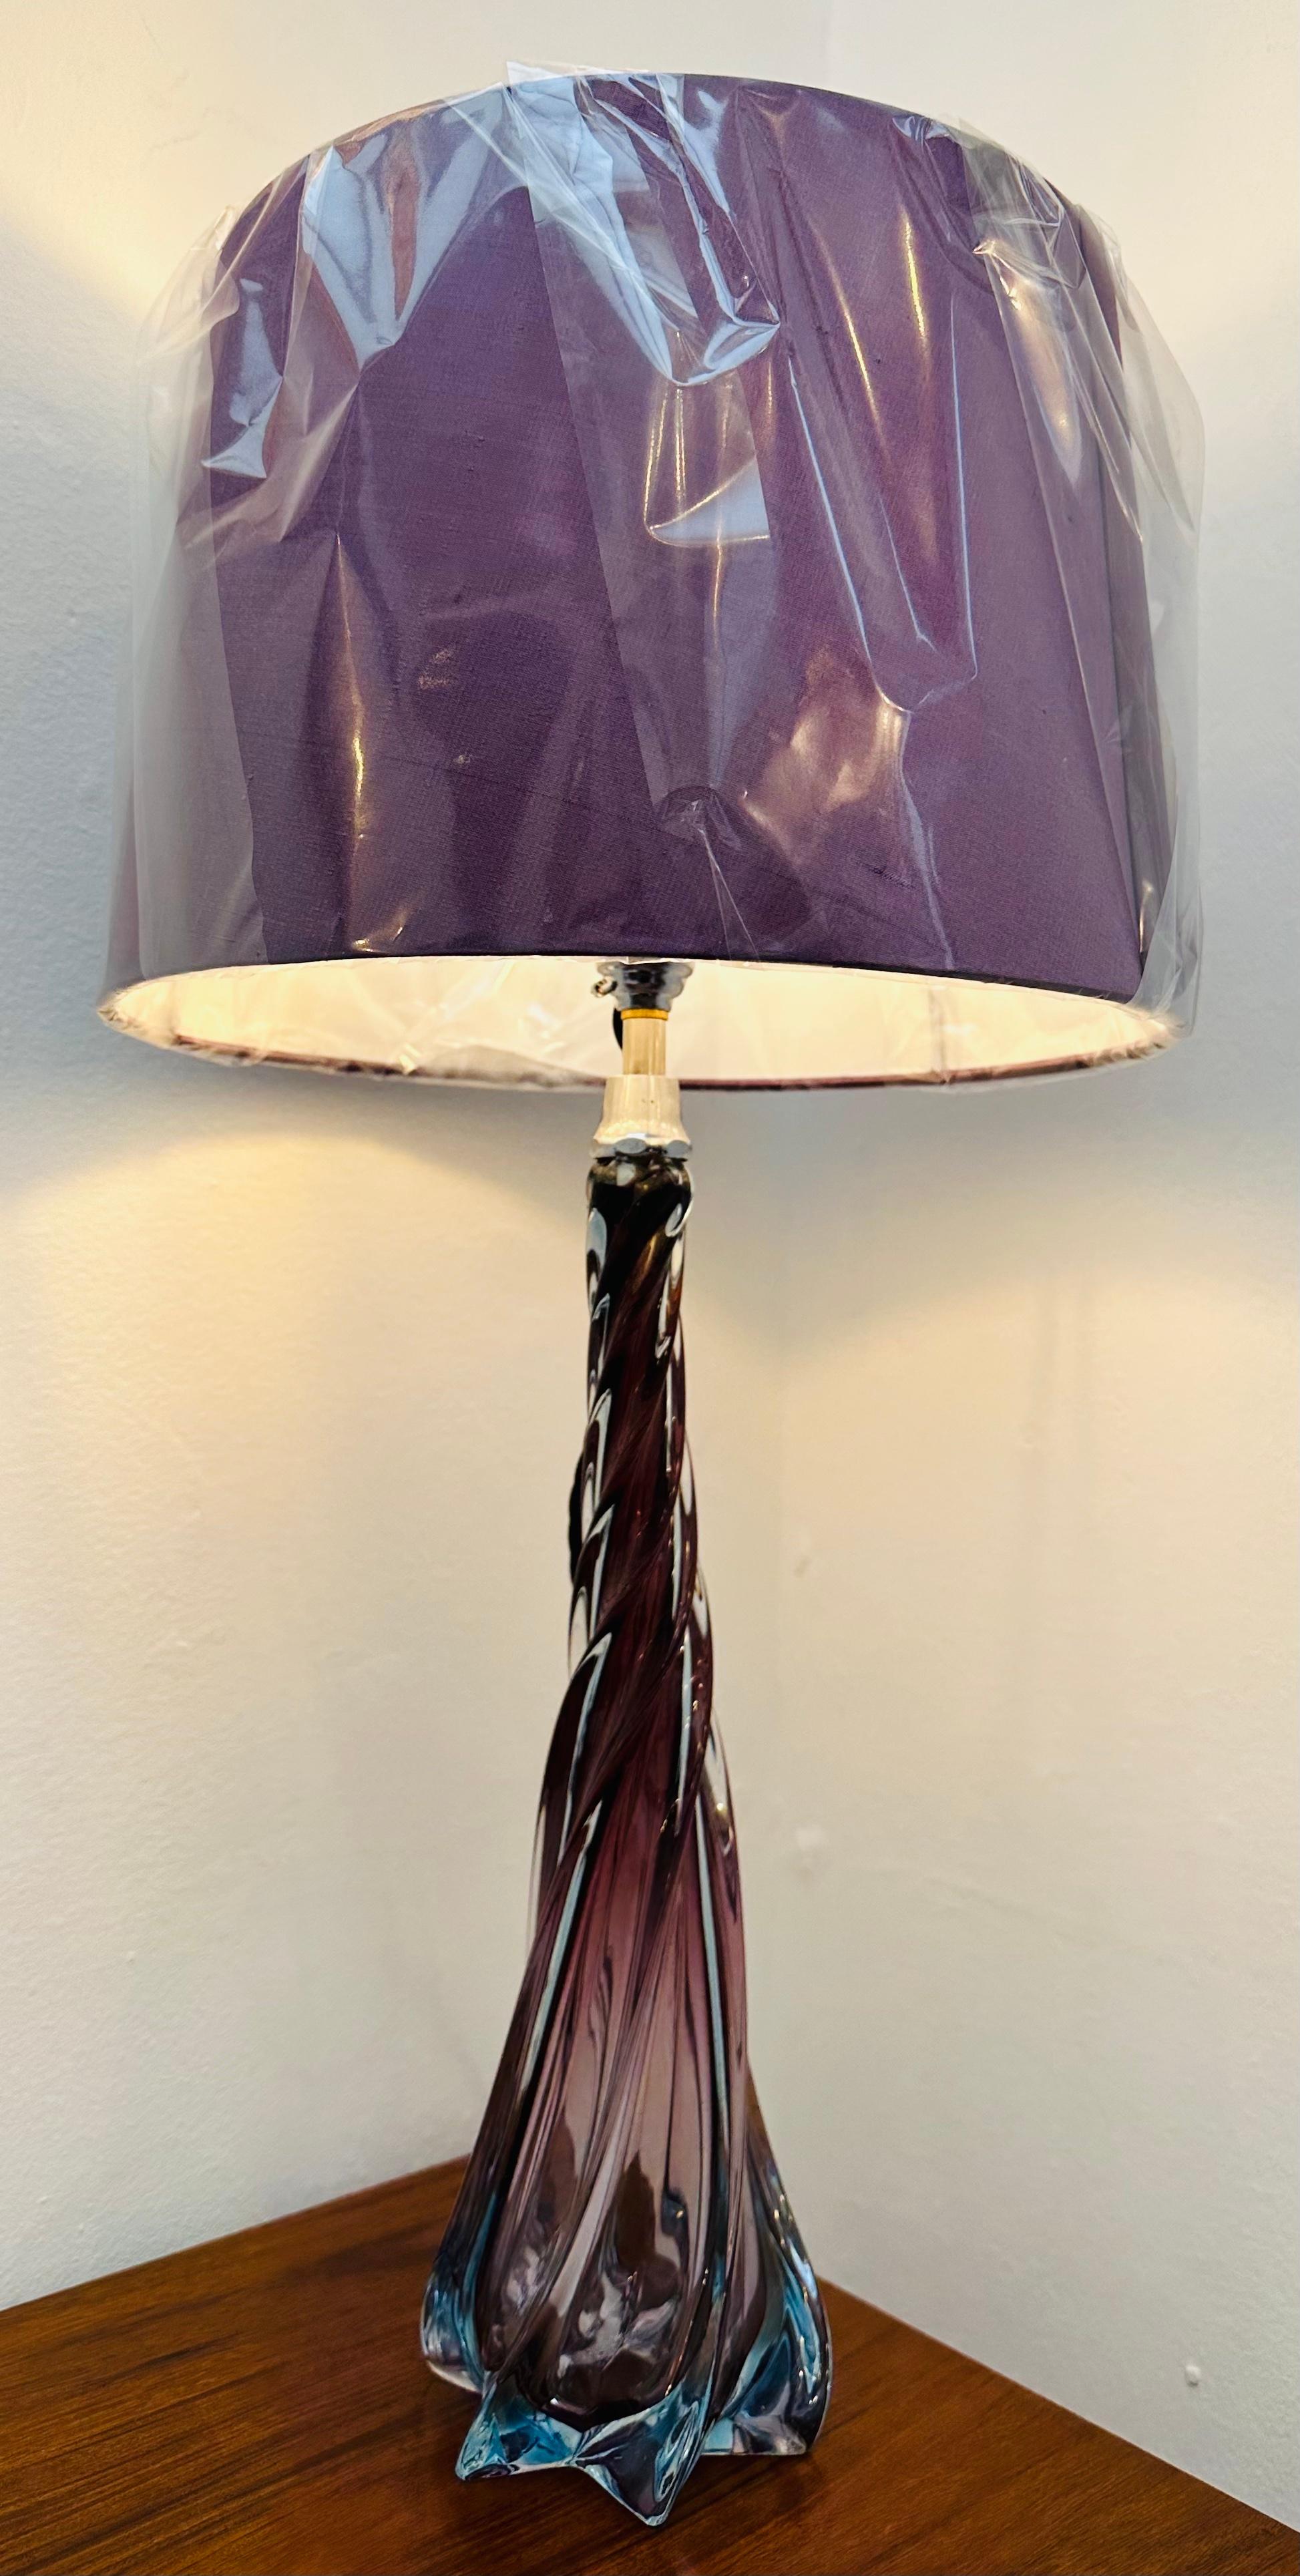 Magnifique lampe de table belge des années 1950, attribuée à Val Saint Lambert. Cette lampe de table tourbillonnante est violette au sommet, le bleu étant progressivement introduit dans chacune des ailettes qui forment une étoile à six branches à la